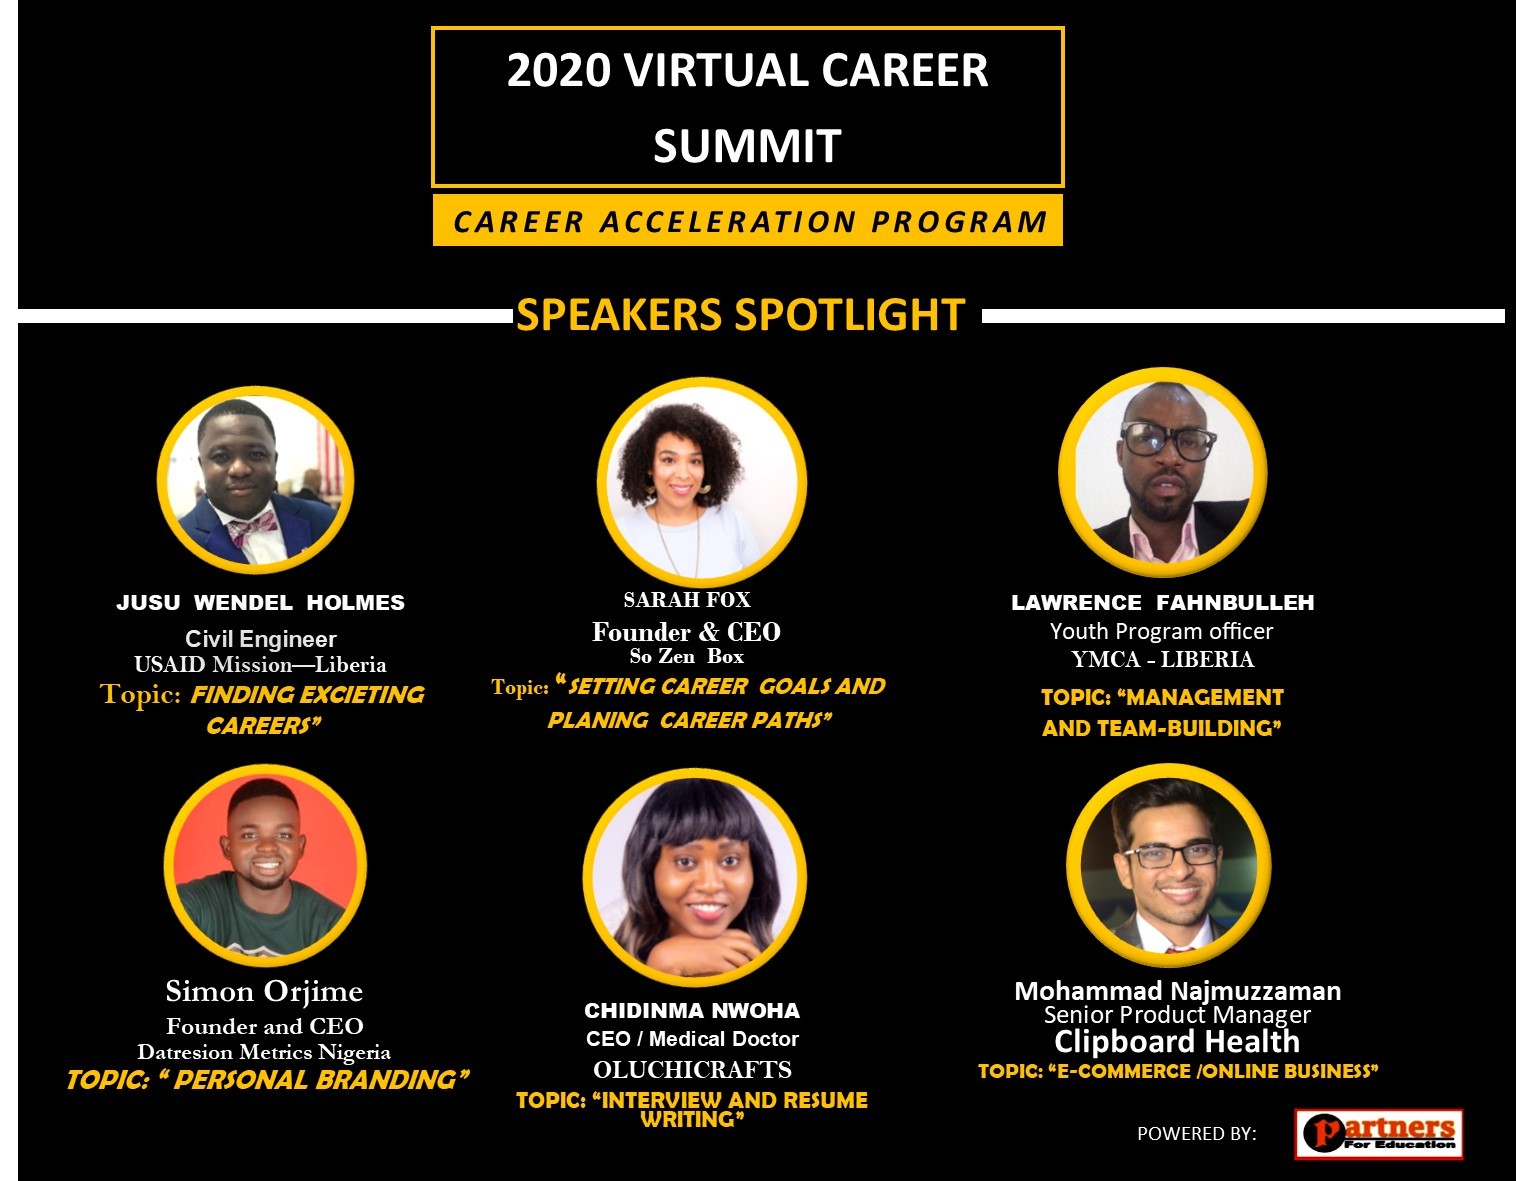 Speakers attending the 2020 virtual career summit